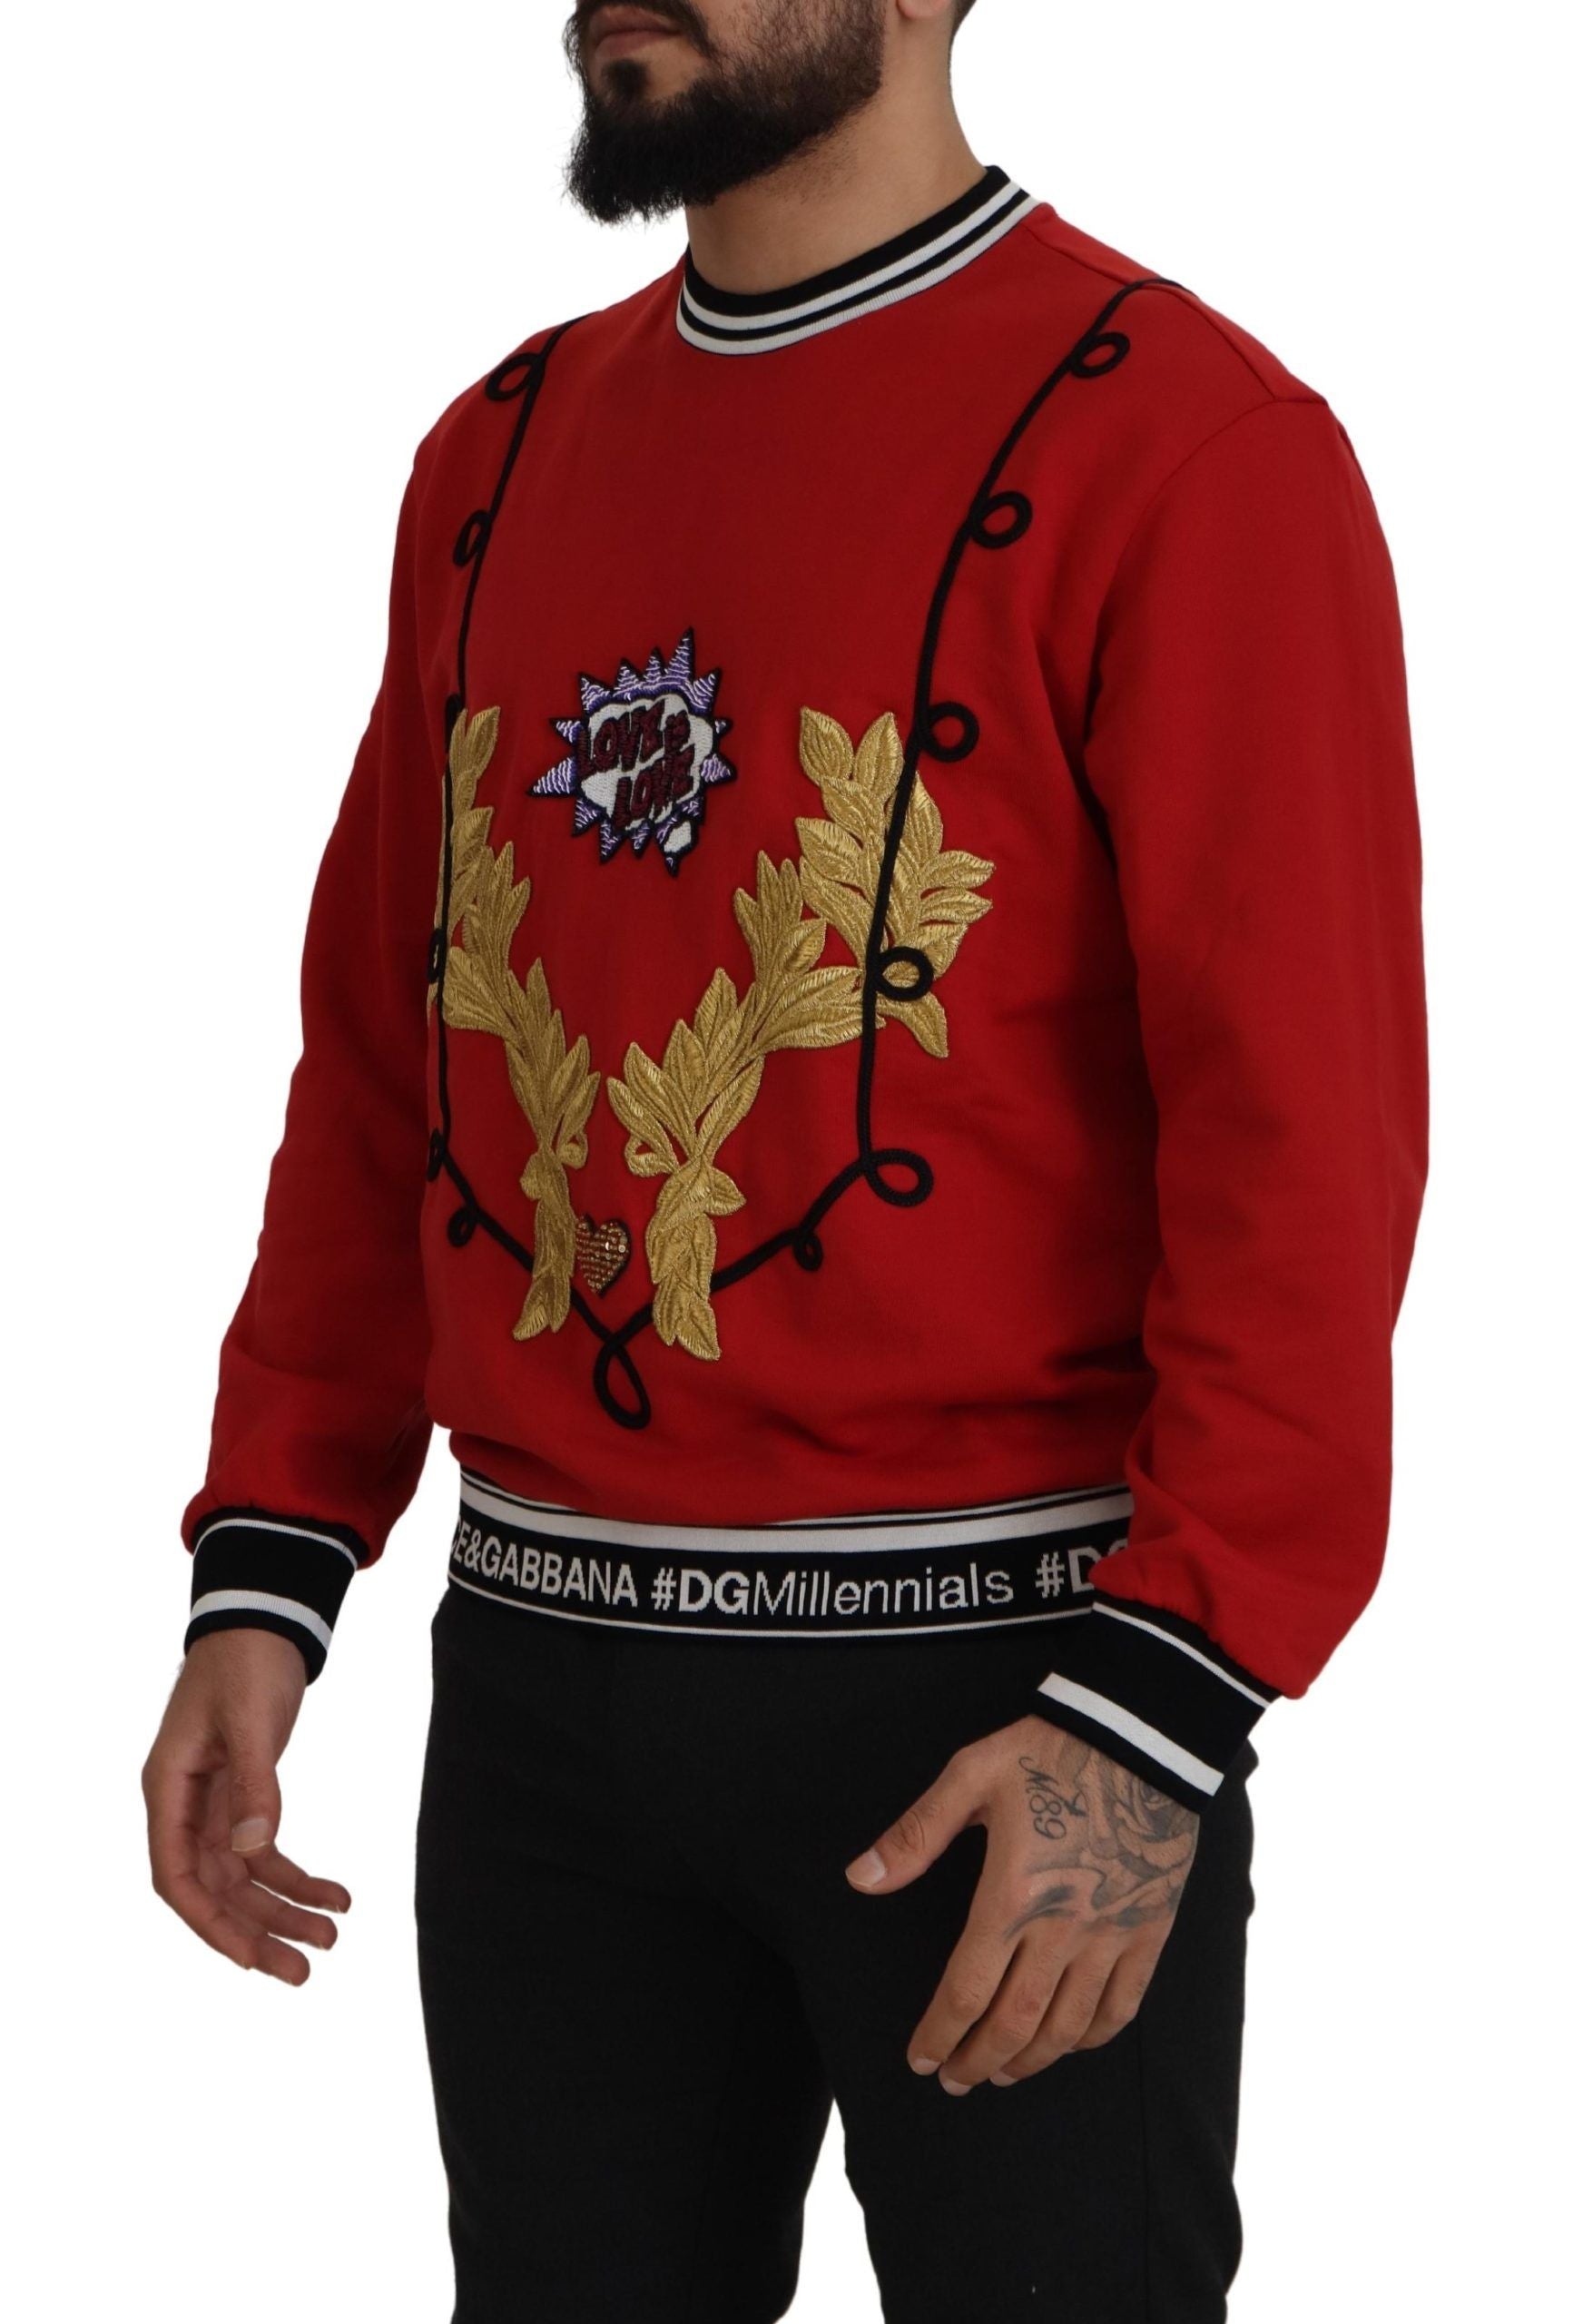 Dolce & Gabbana Suéter rojo con lentejuelas deslumbrantes